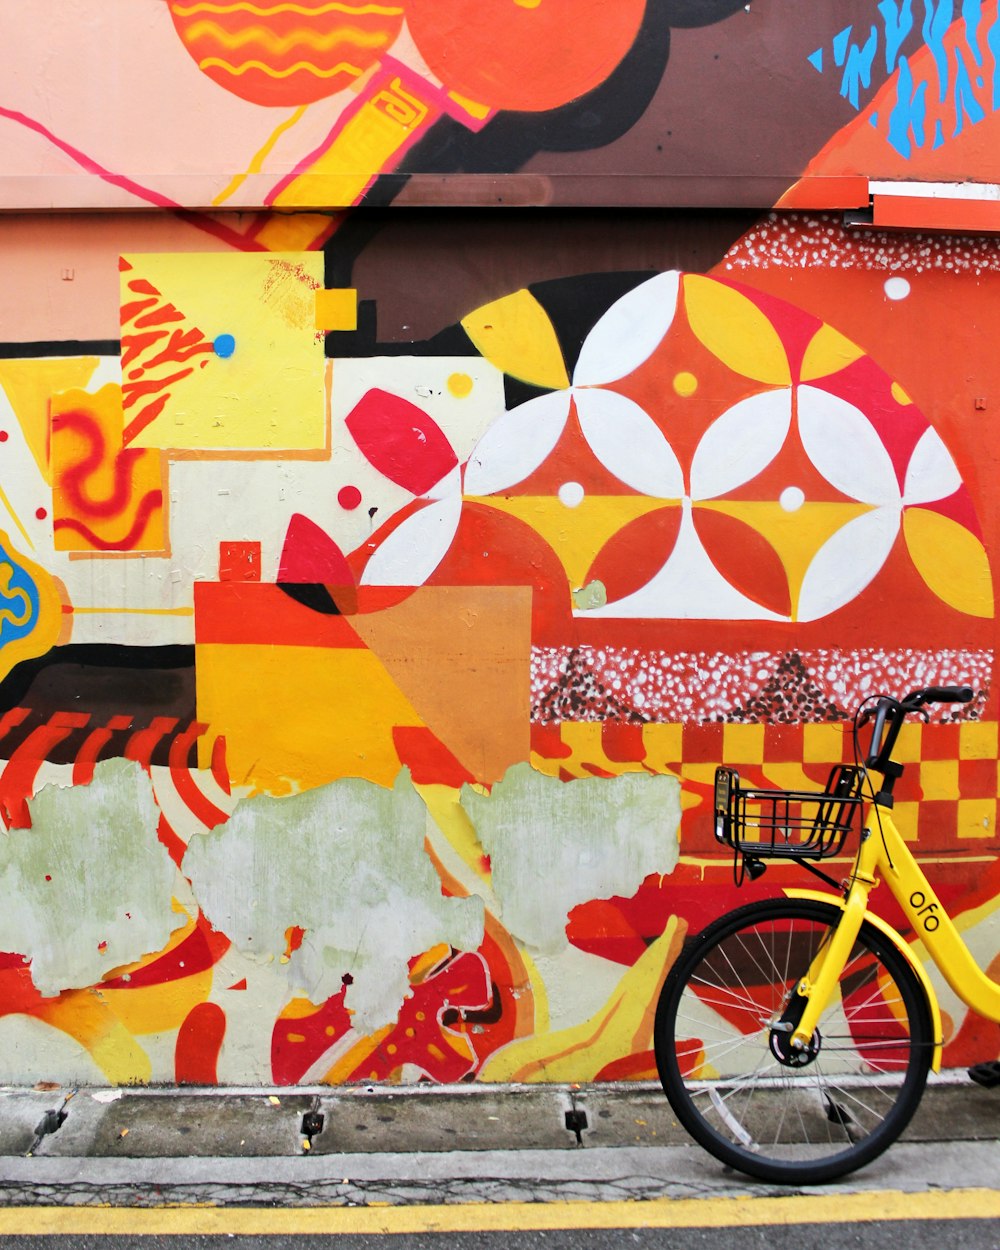 bici da città gialla accanto al muro multicolore